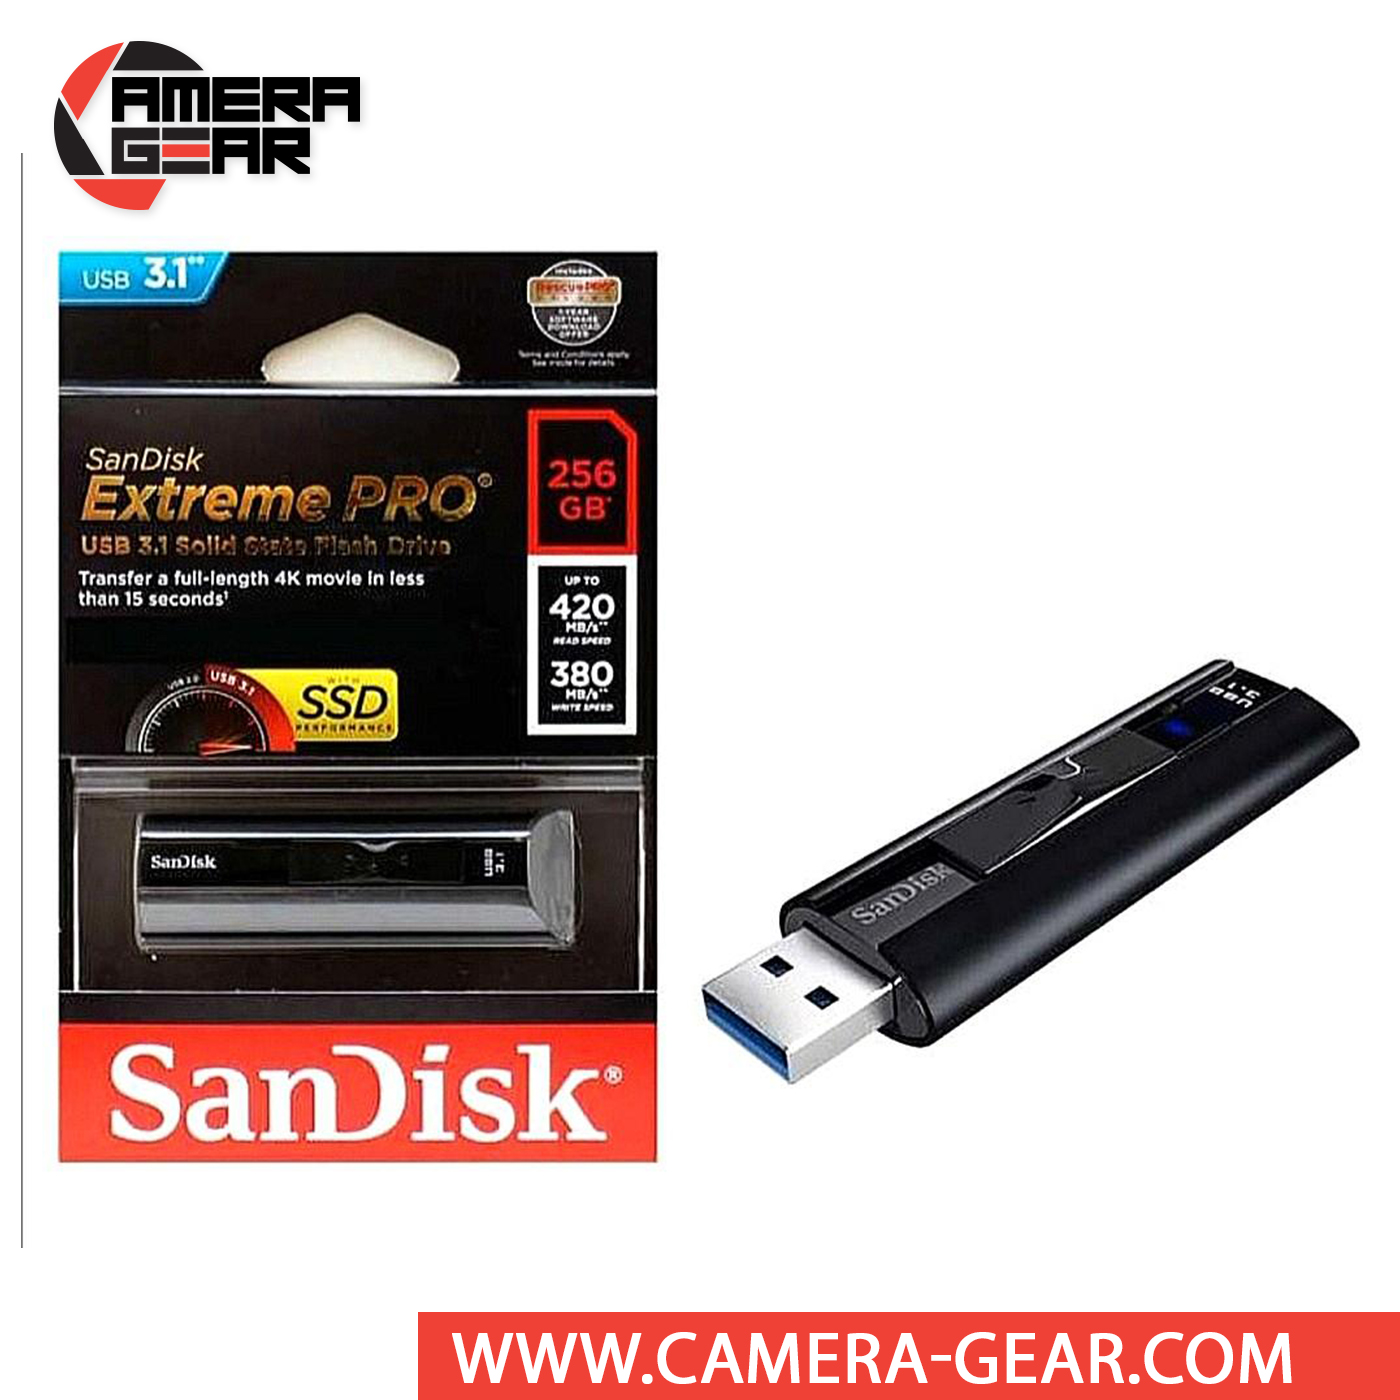 klar italiensk Hvor SanDisk 256GB Extreme Pro USB 3.1 Solid State Flash Drive